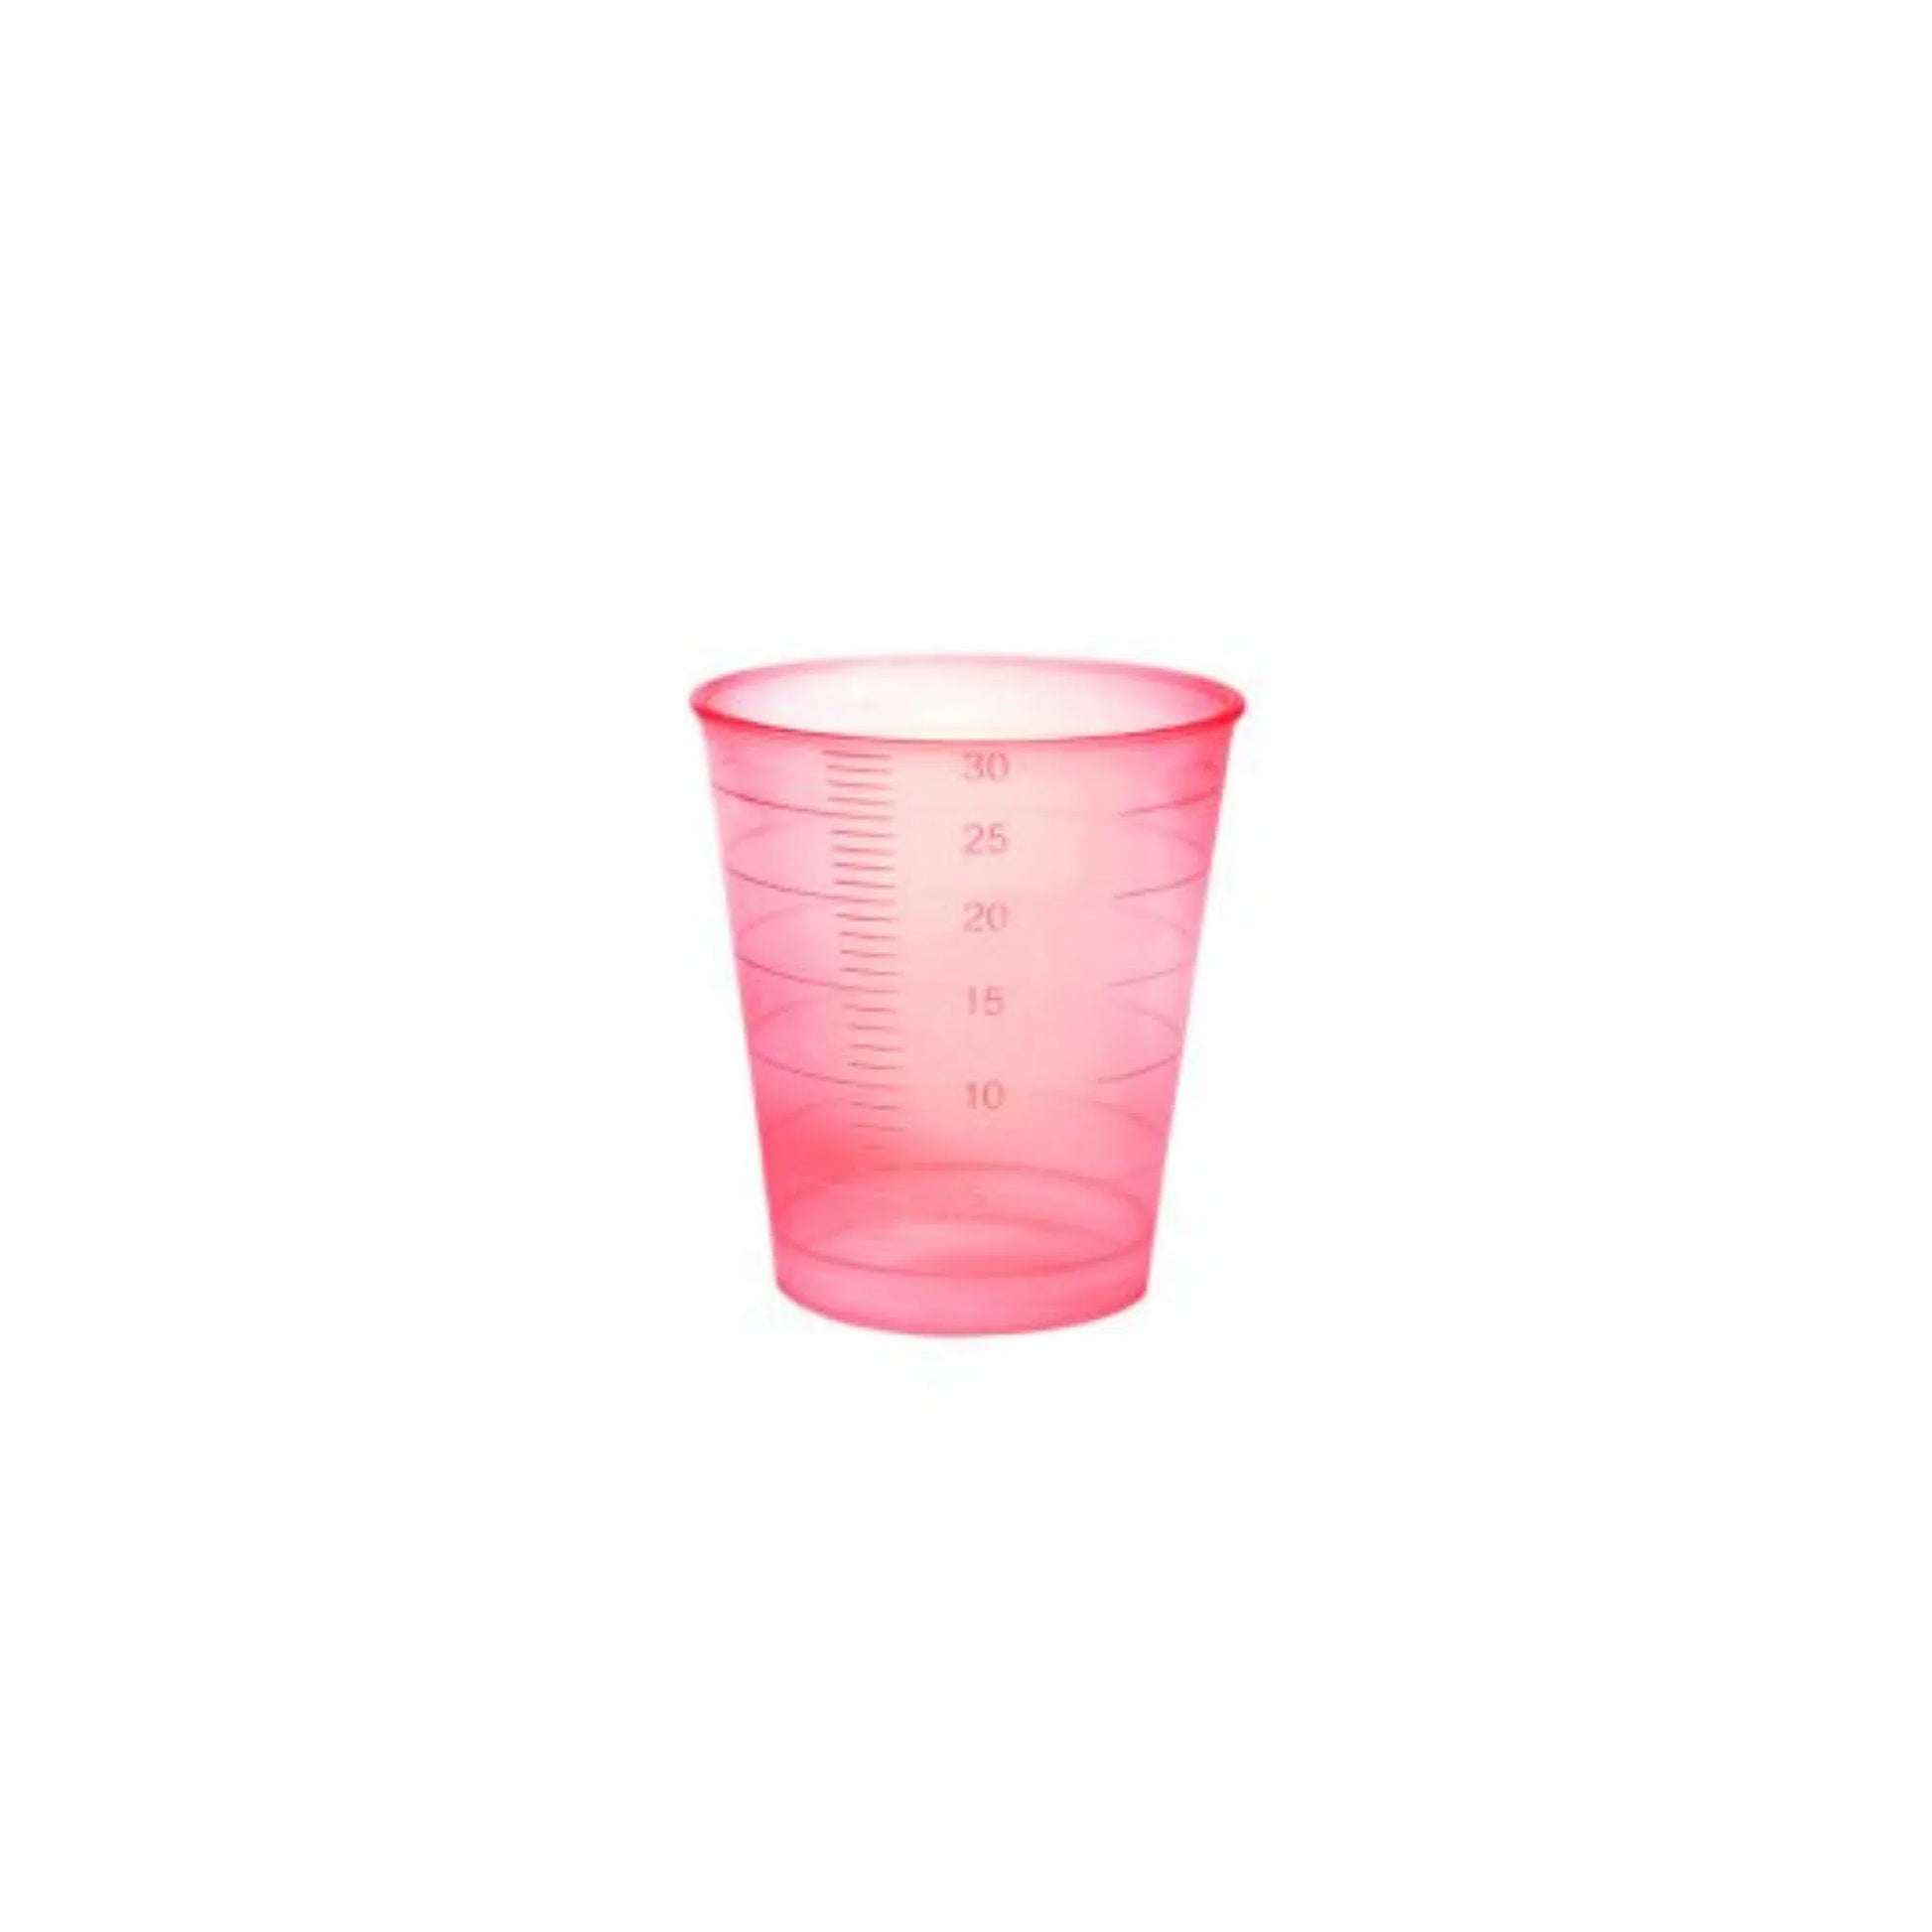 Ein transparenter rosa Meditrade Einmal-Medizinbecher mit Messlinien, die das Volumen in Millilitern anzeigen.